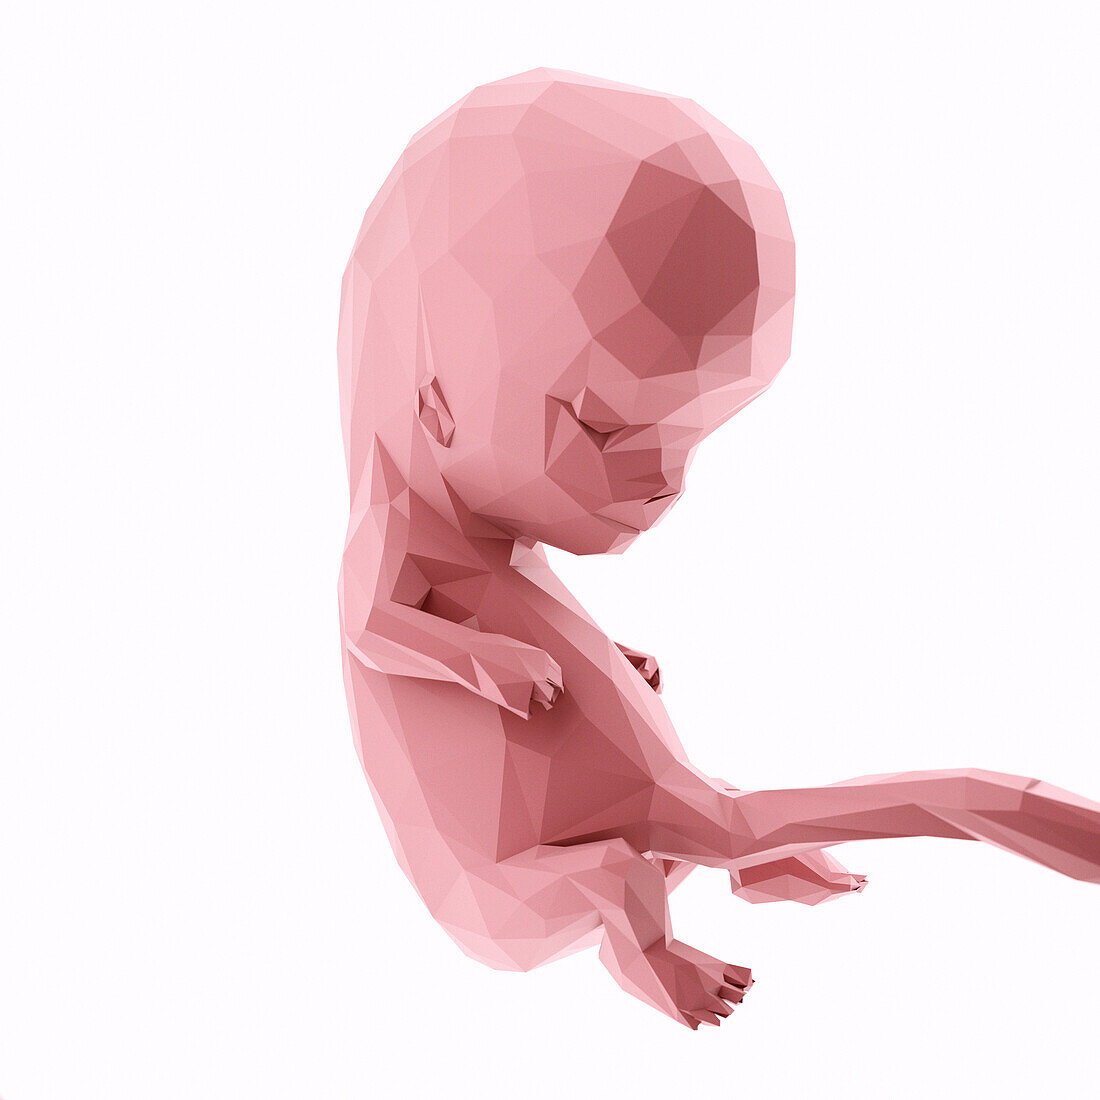 Human fetus at week 10, abstract illustration